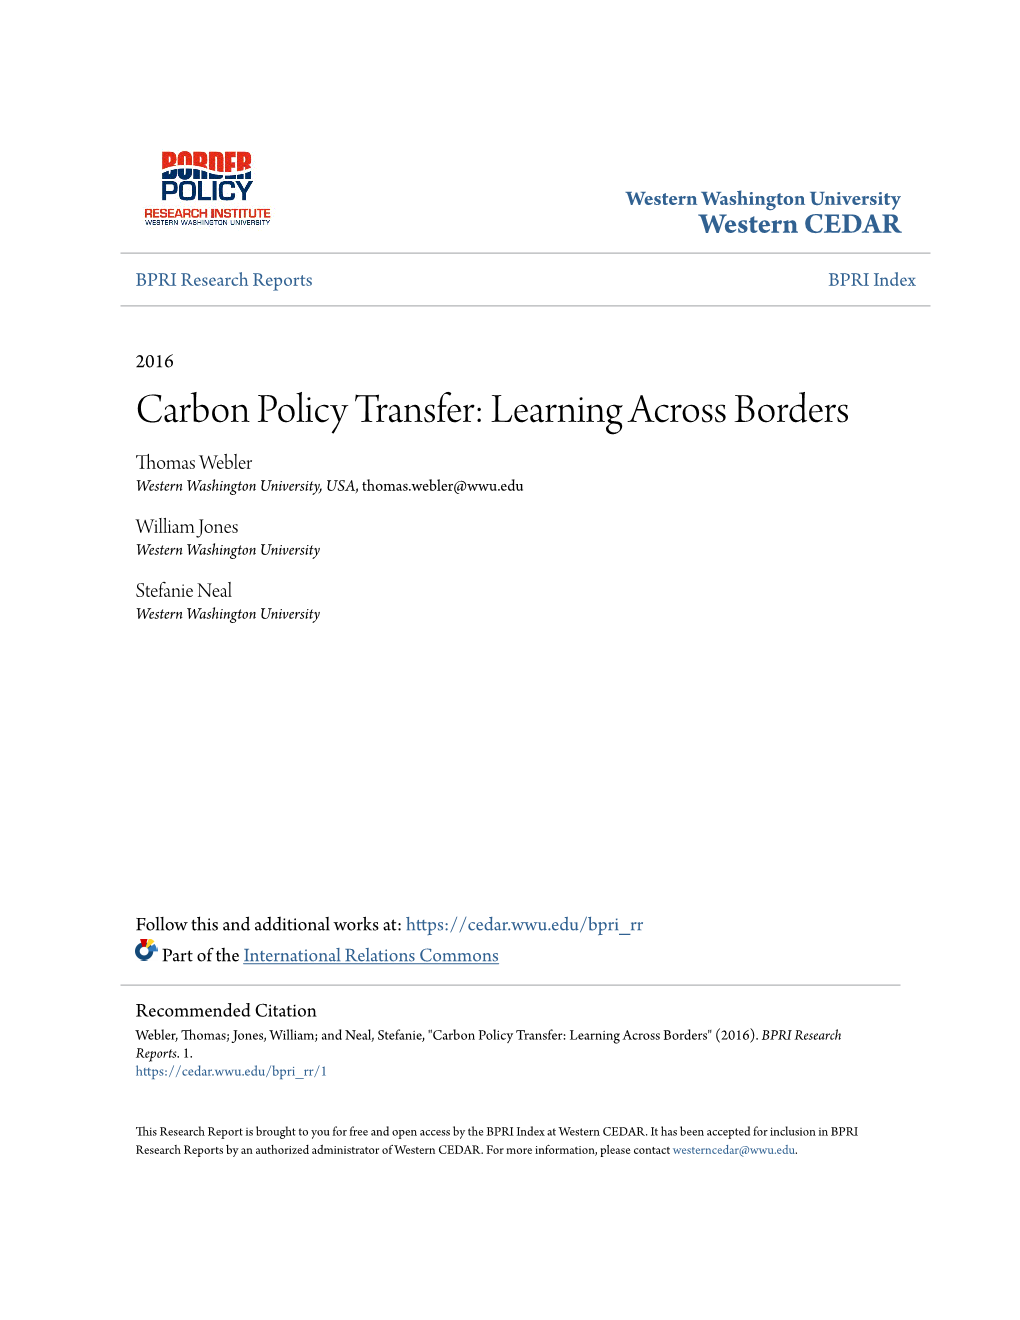 Carbon Policy Transfer: Learning Across Borders Thomas Webler Western Washington University, USA, Thomas.Webler@Wwu.Edu